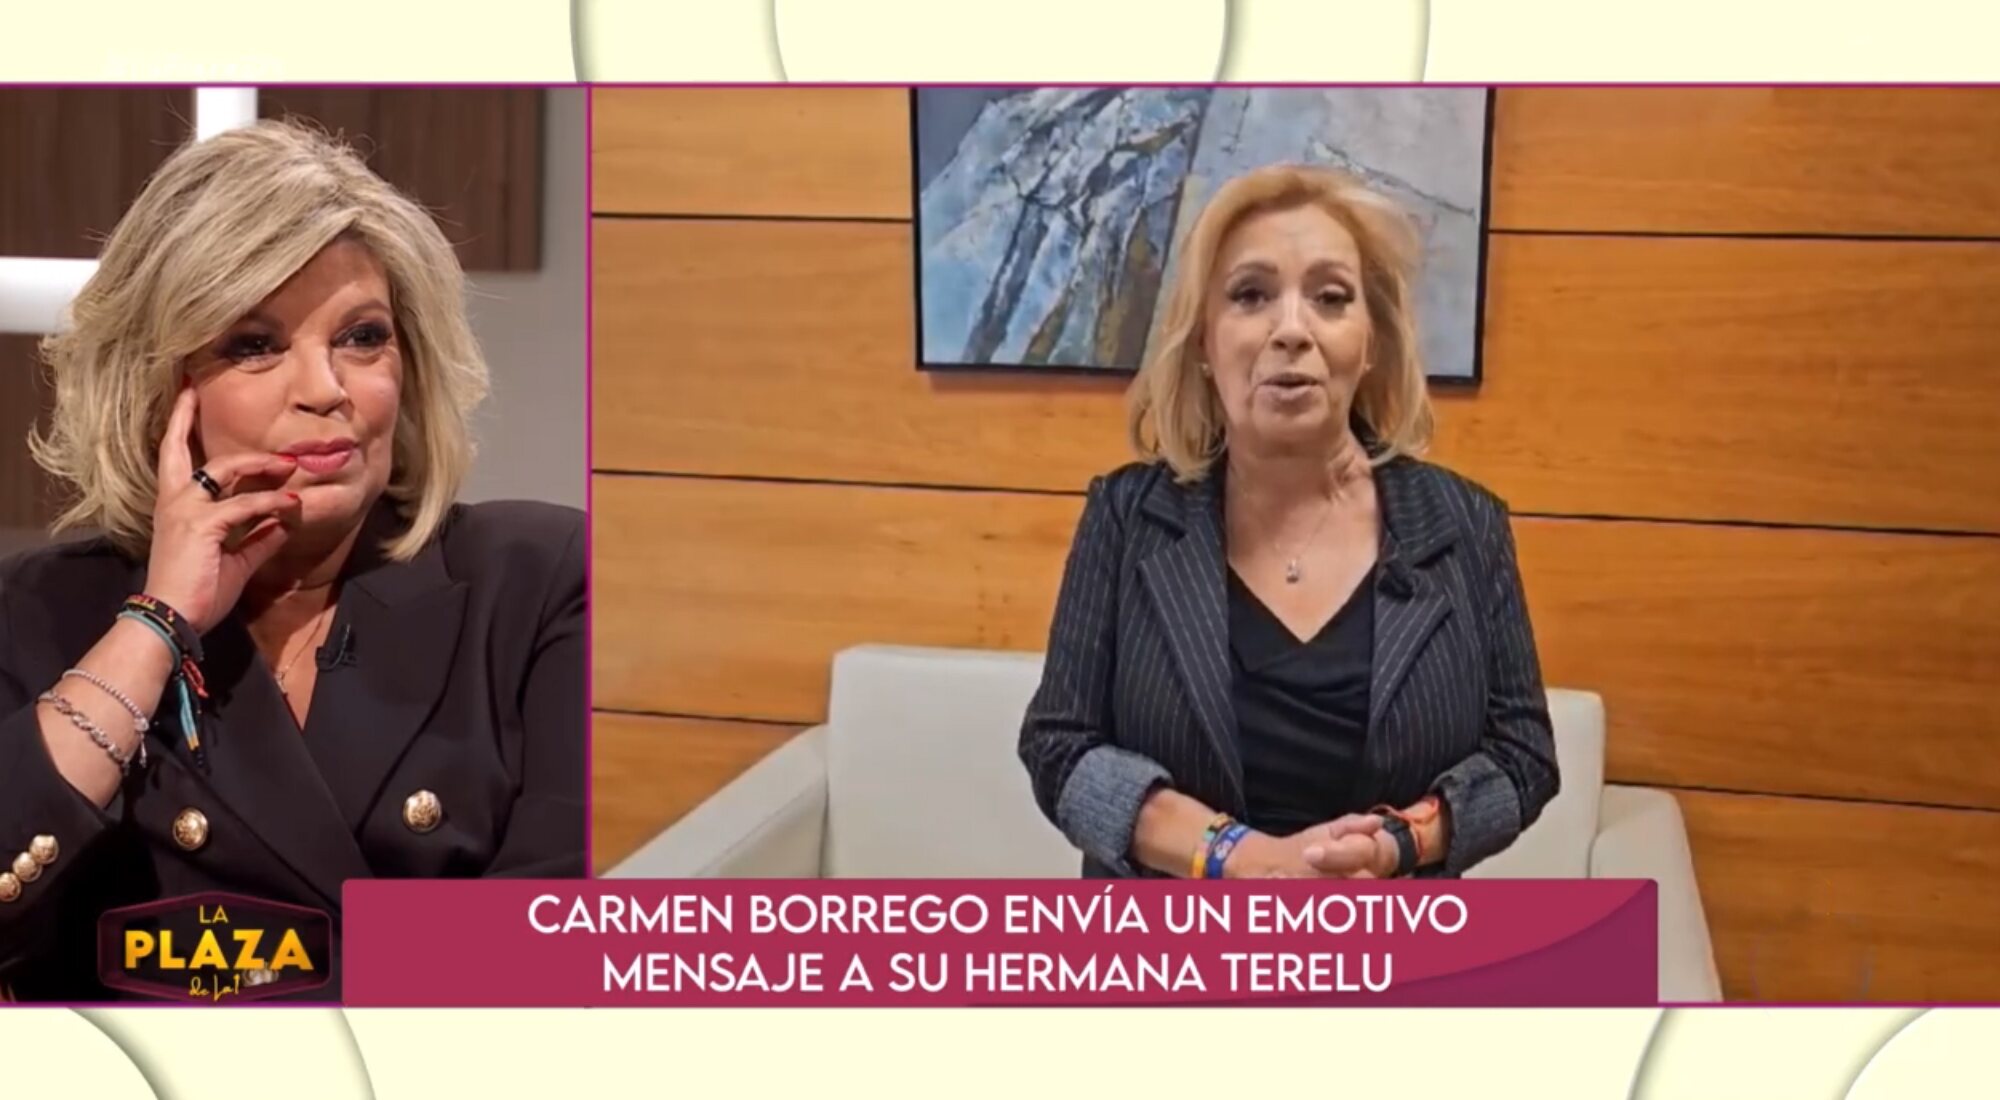 Carmen Borrego le envía un mensaje a Terelu en el estreno de 'La plaza'